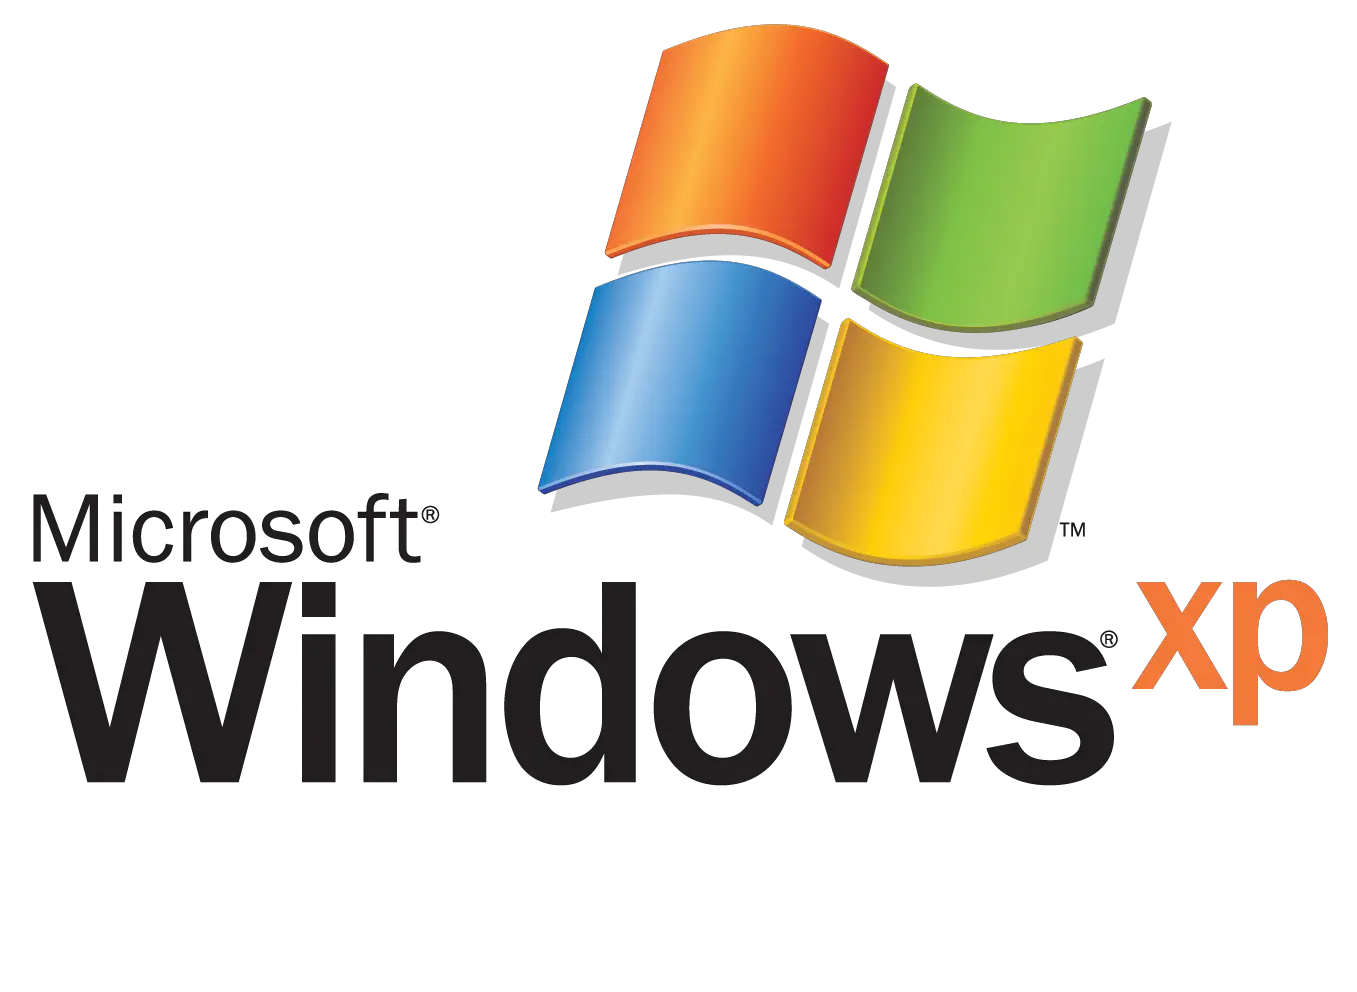 Logo de Windows XP